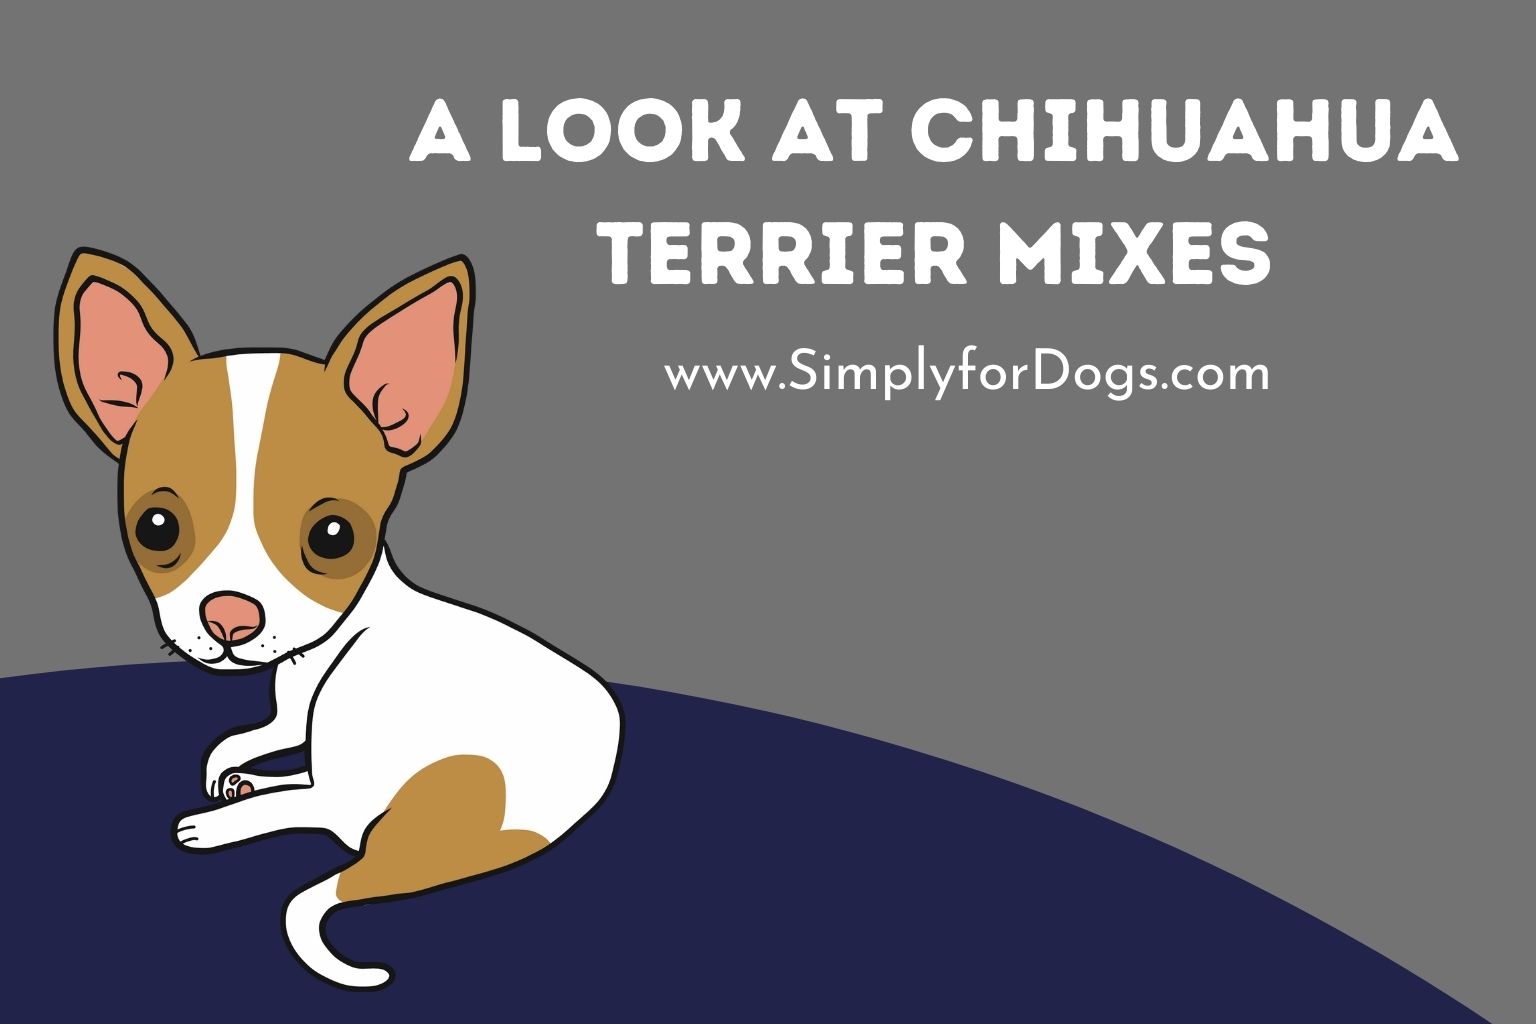 A Look at Chihuahua Terrier Mixes